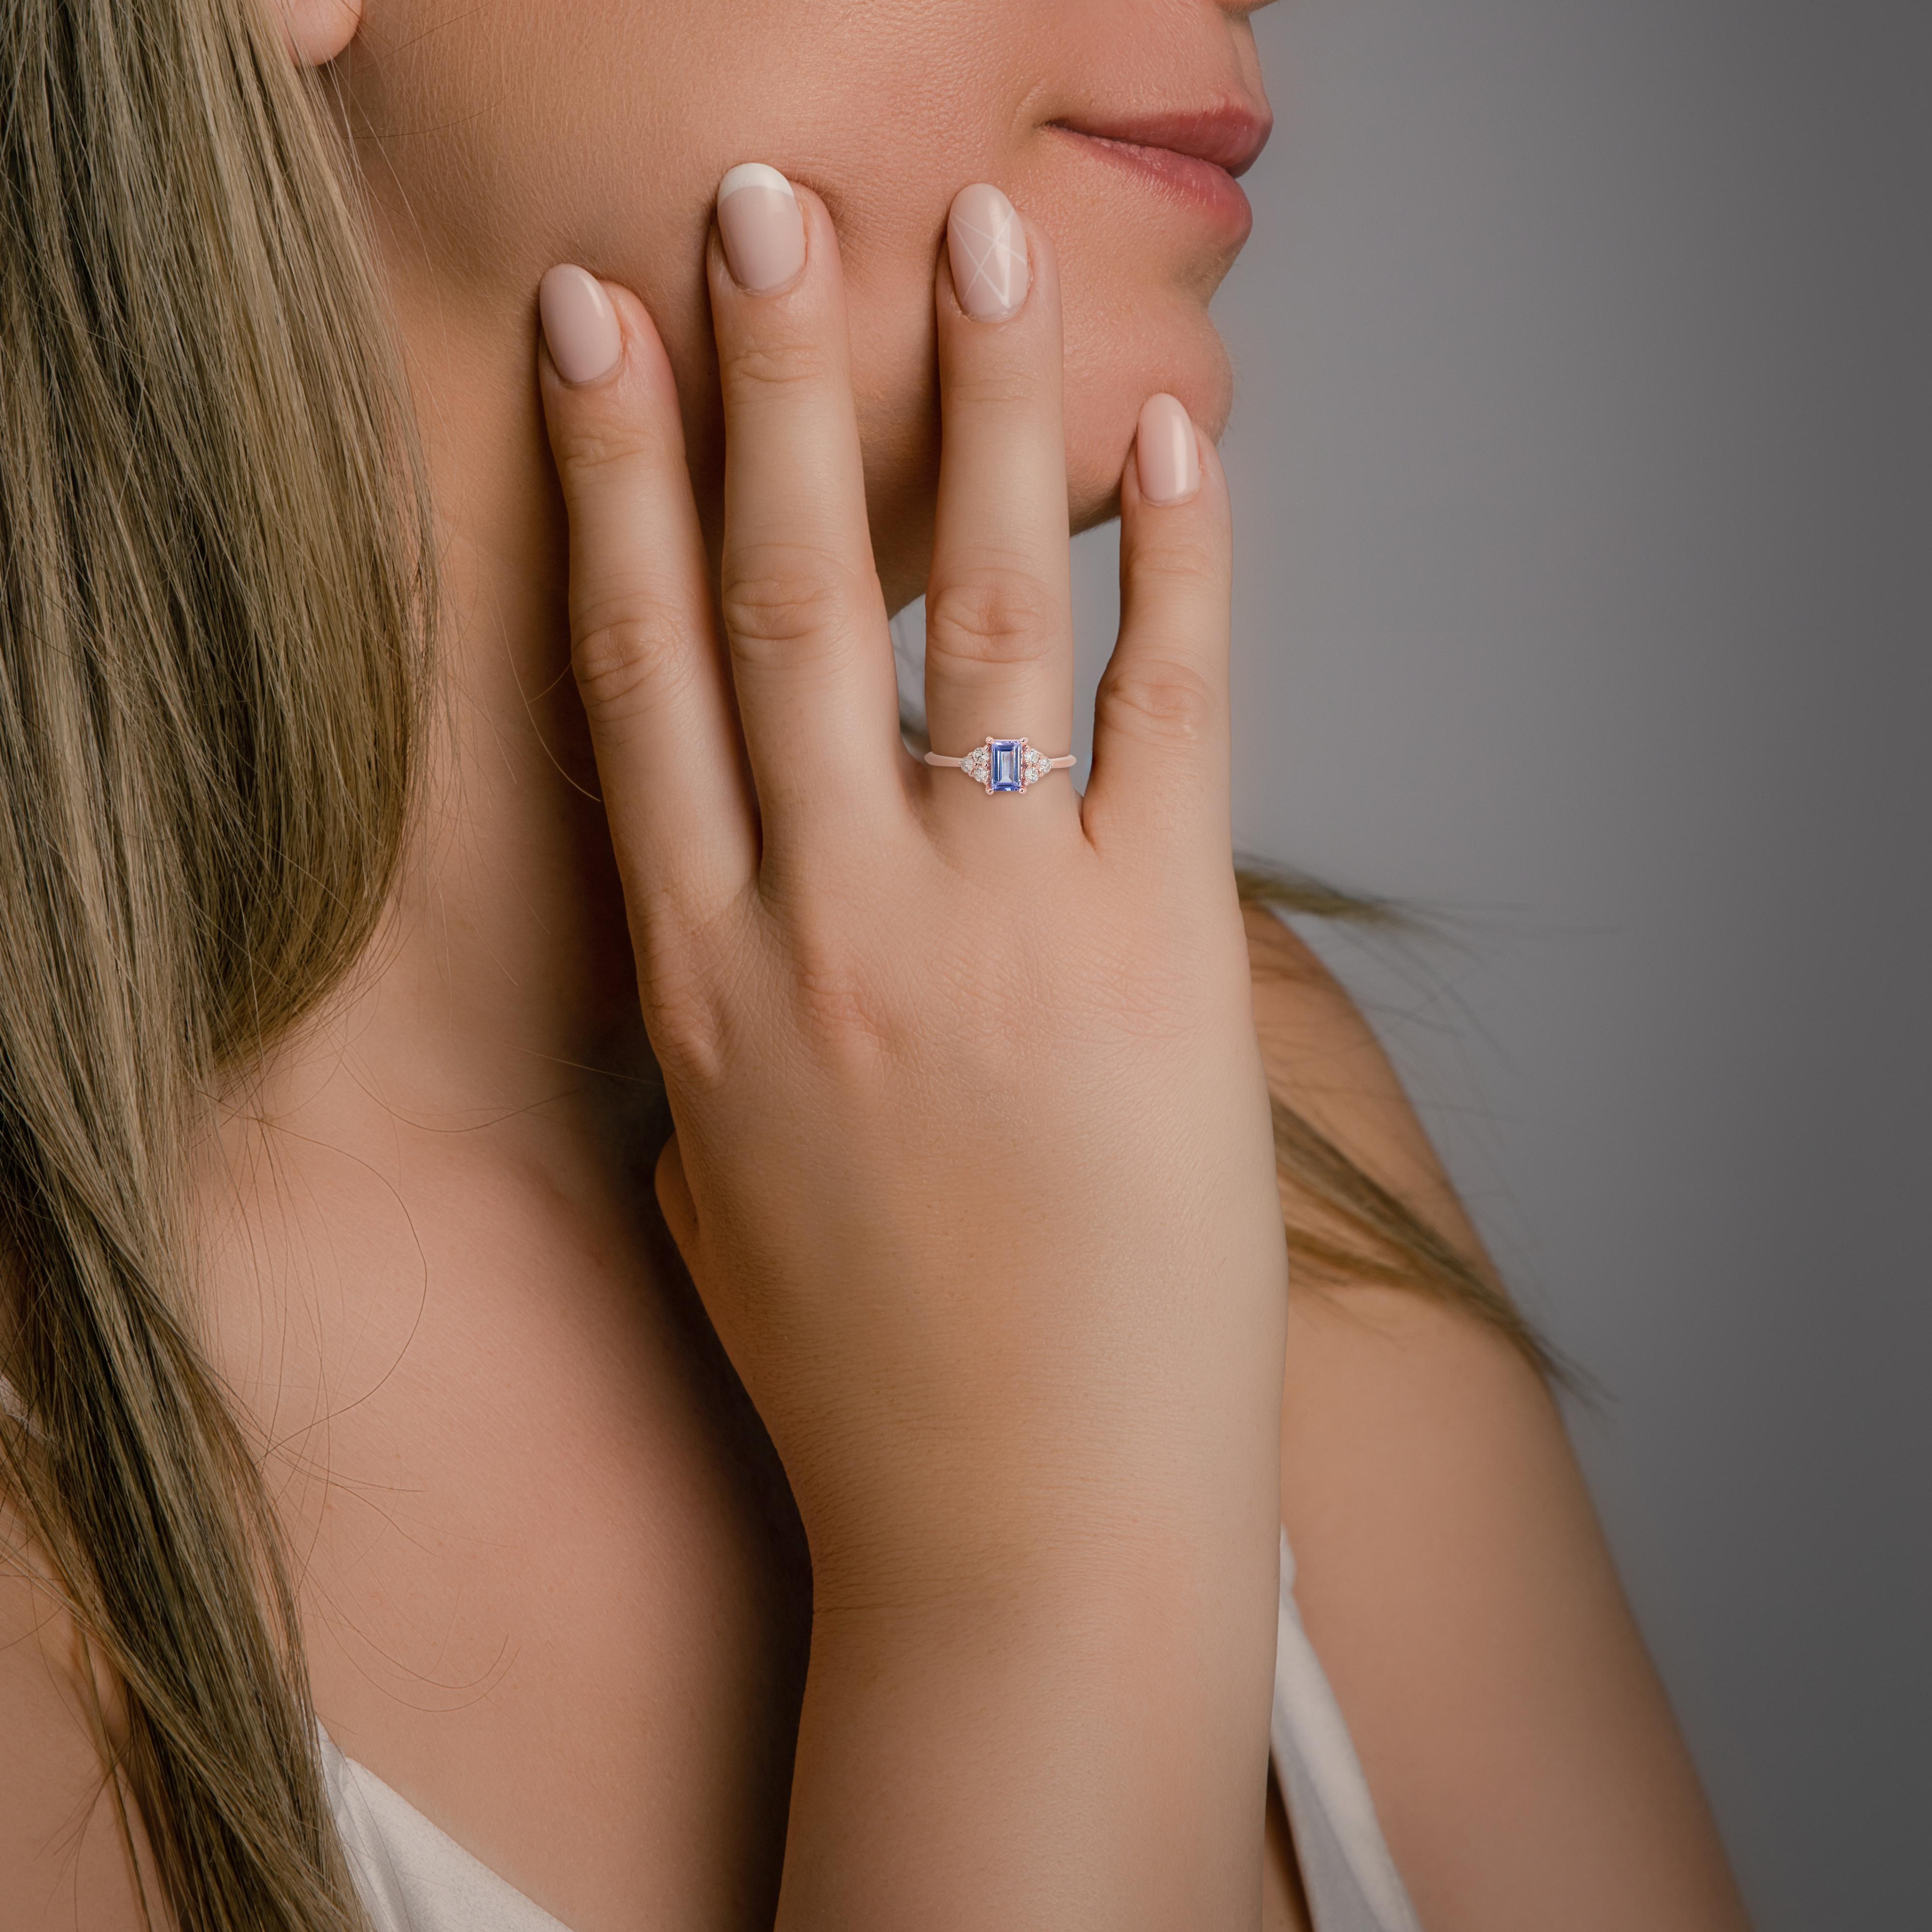 Bezaubernde 14k Rose Gold Tansanit und Diamant Pave Ring w/1,01 ct - IGI zertifiziert

Entdecken Sie die faszinierende Schönheit dieses Rings mit einem Tansanit und einem Diamanten, der in den romantischen Farbton von 14 Karat Roségold gefasst ist.